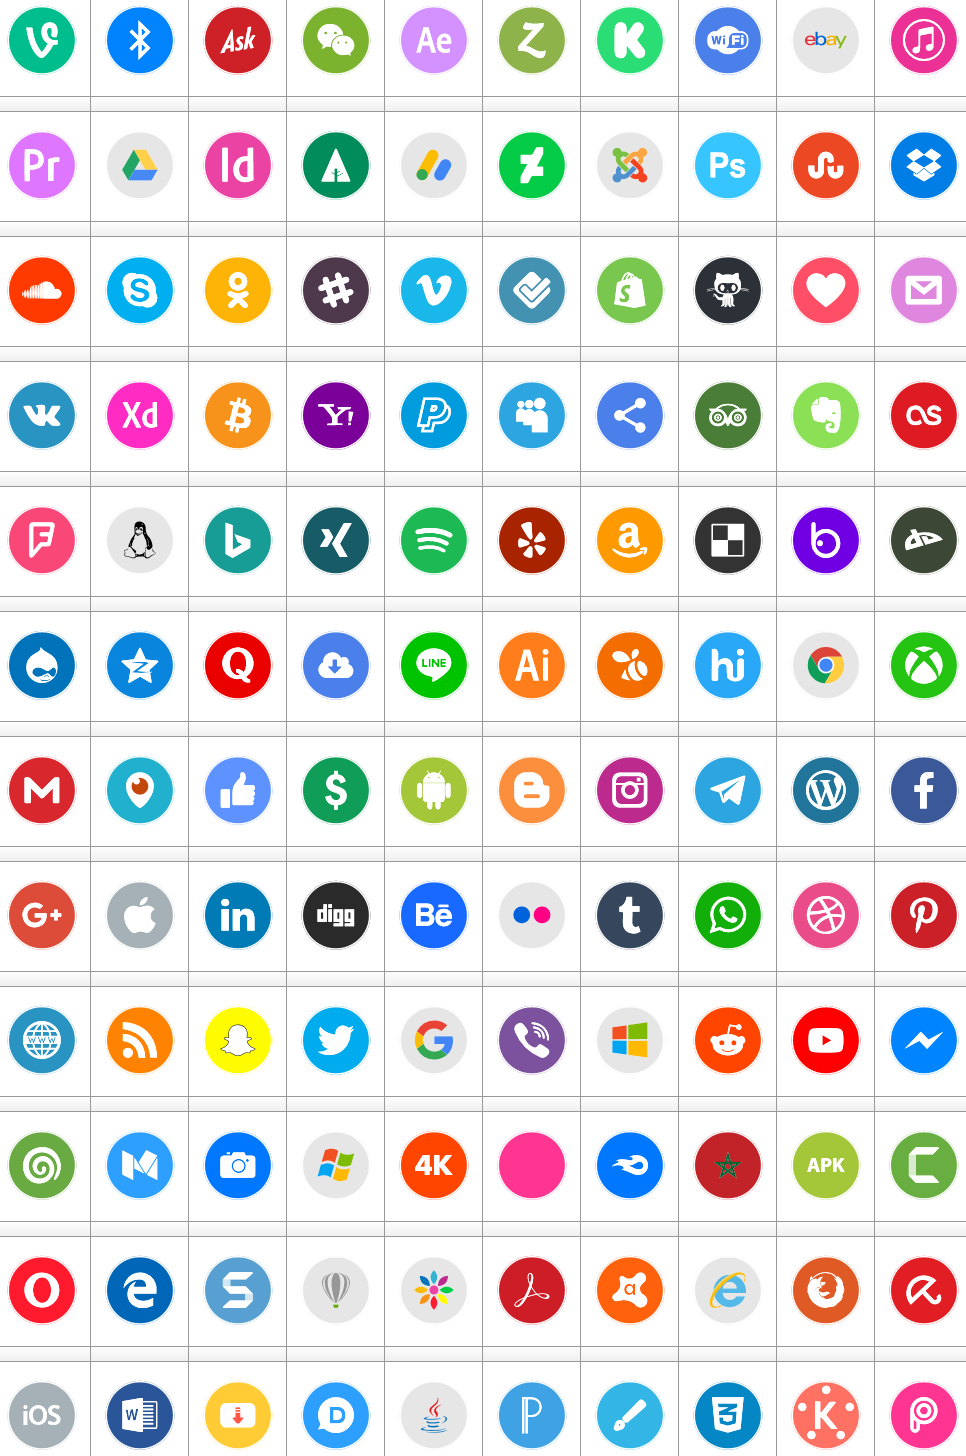 Download Font Icons Social Media 6 Color #font #color ttf otf 120 #icons elharrak #fonts 2019